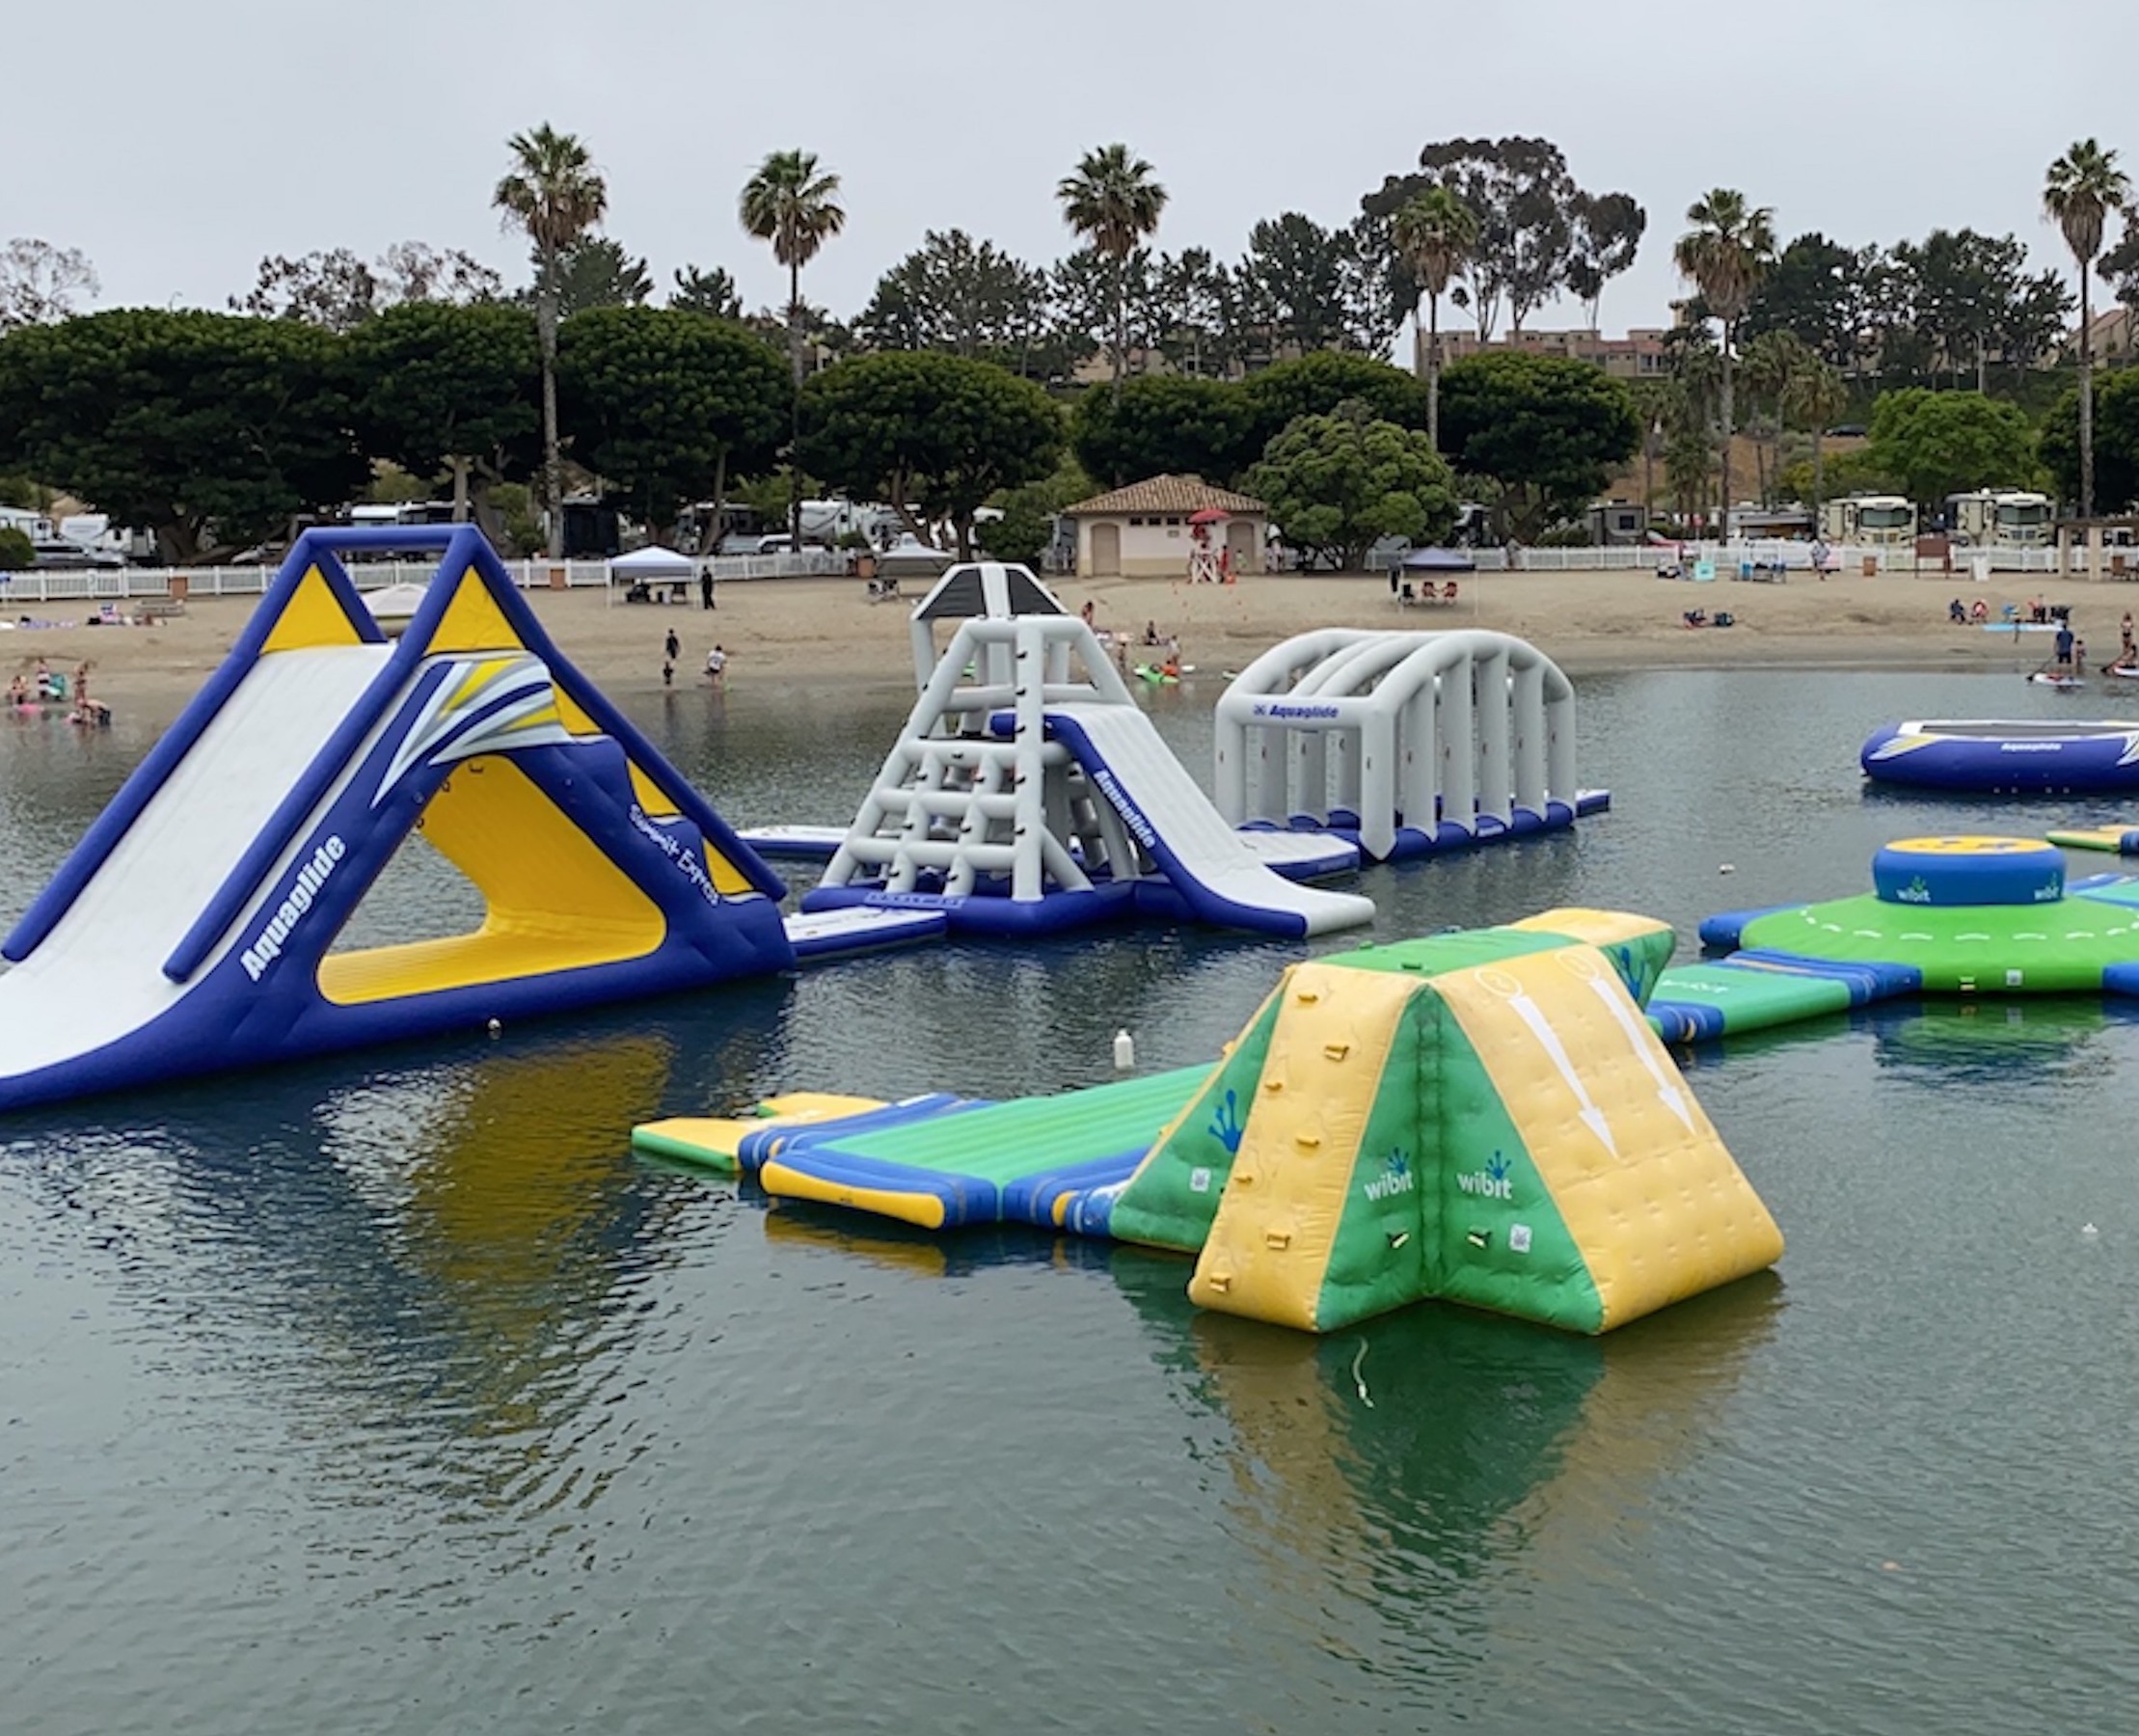 Newport Dunes Inflatable Water Park Opens